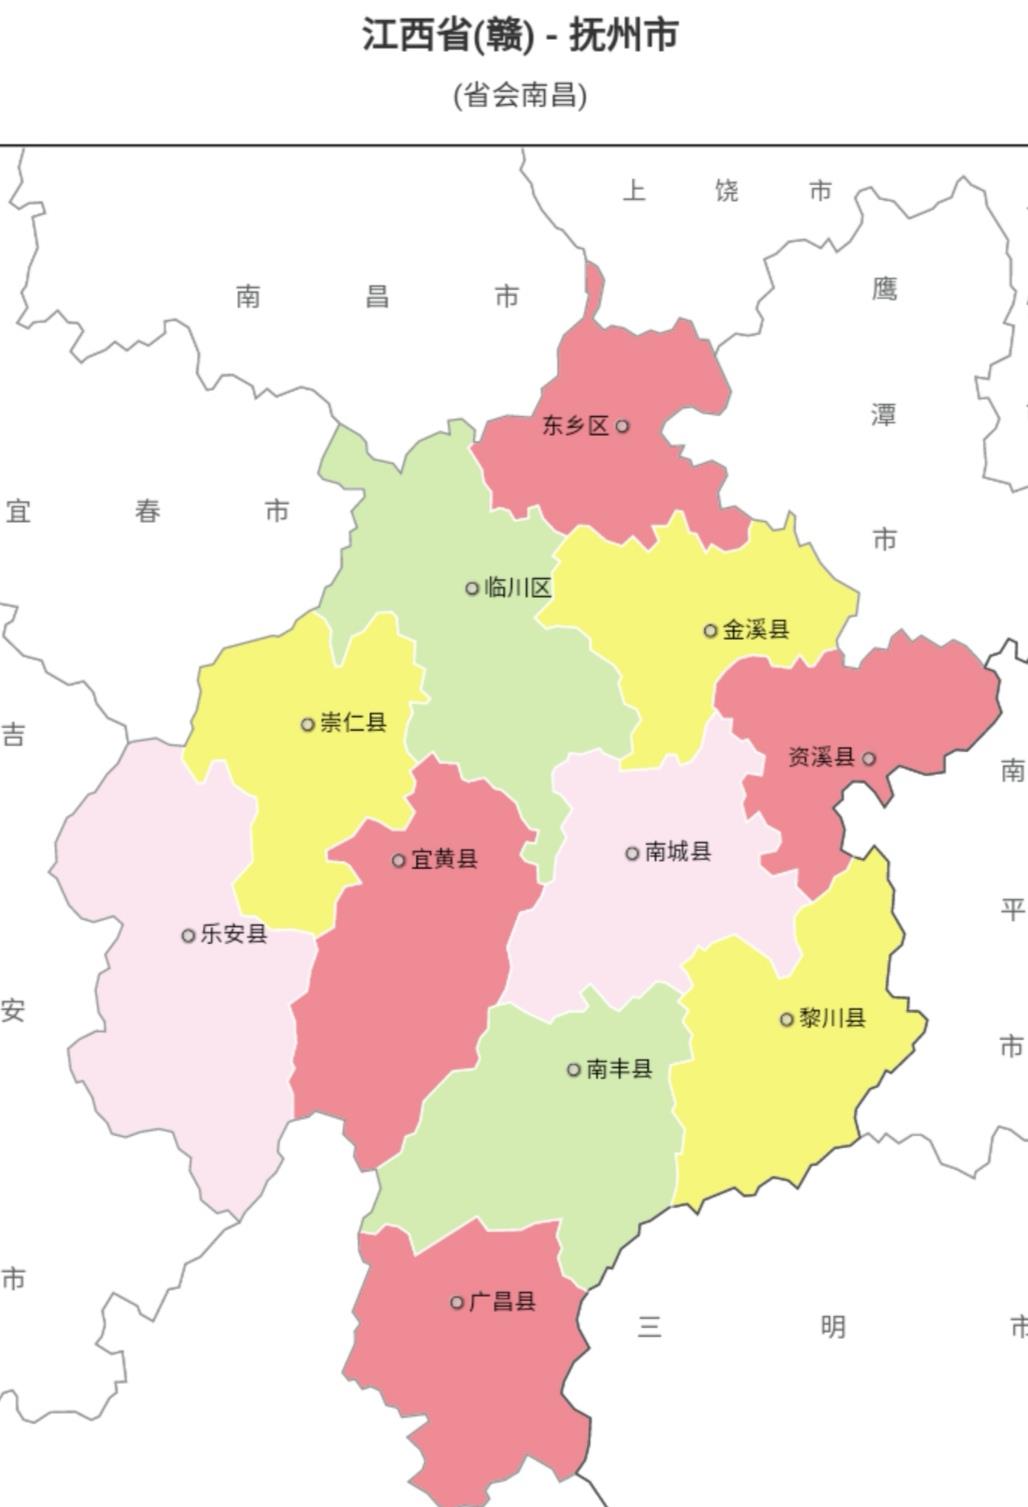 江西行政区划调整图片